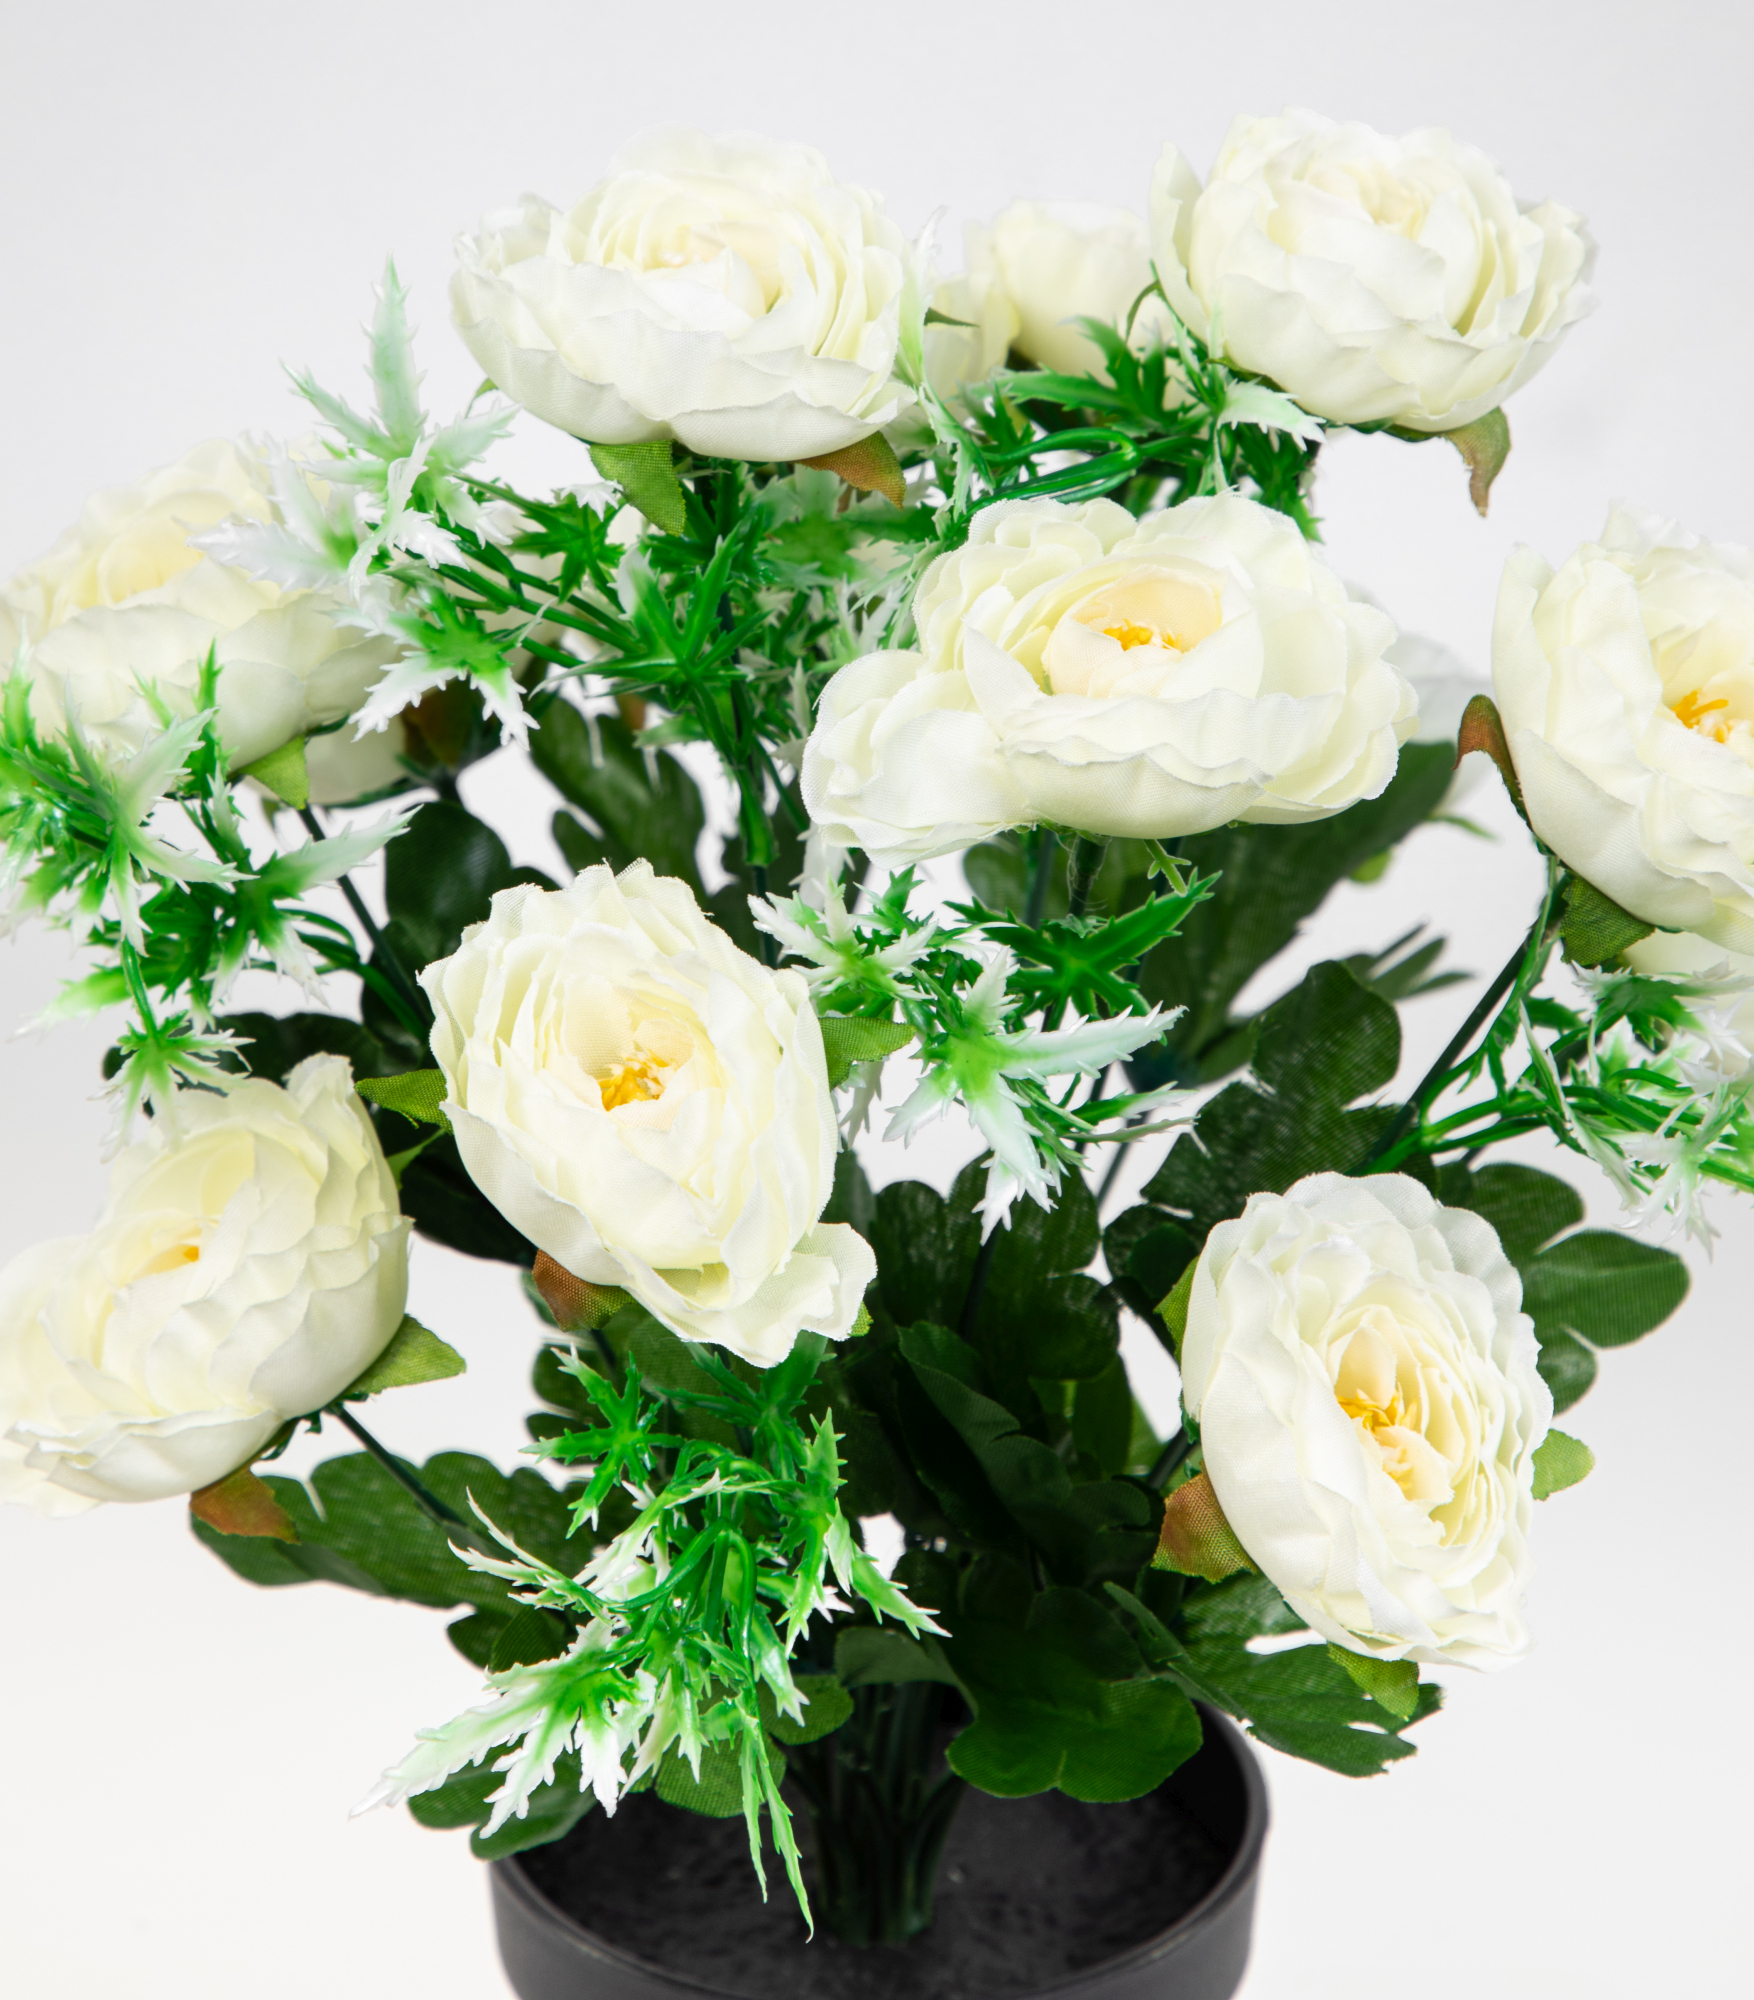 Ranunkelbusch 34cm weiß im Topf JA Kunstpflanzen Kunstblumen künstliche Ranunkel  Blumen